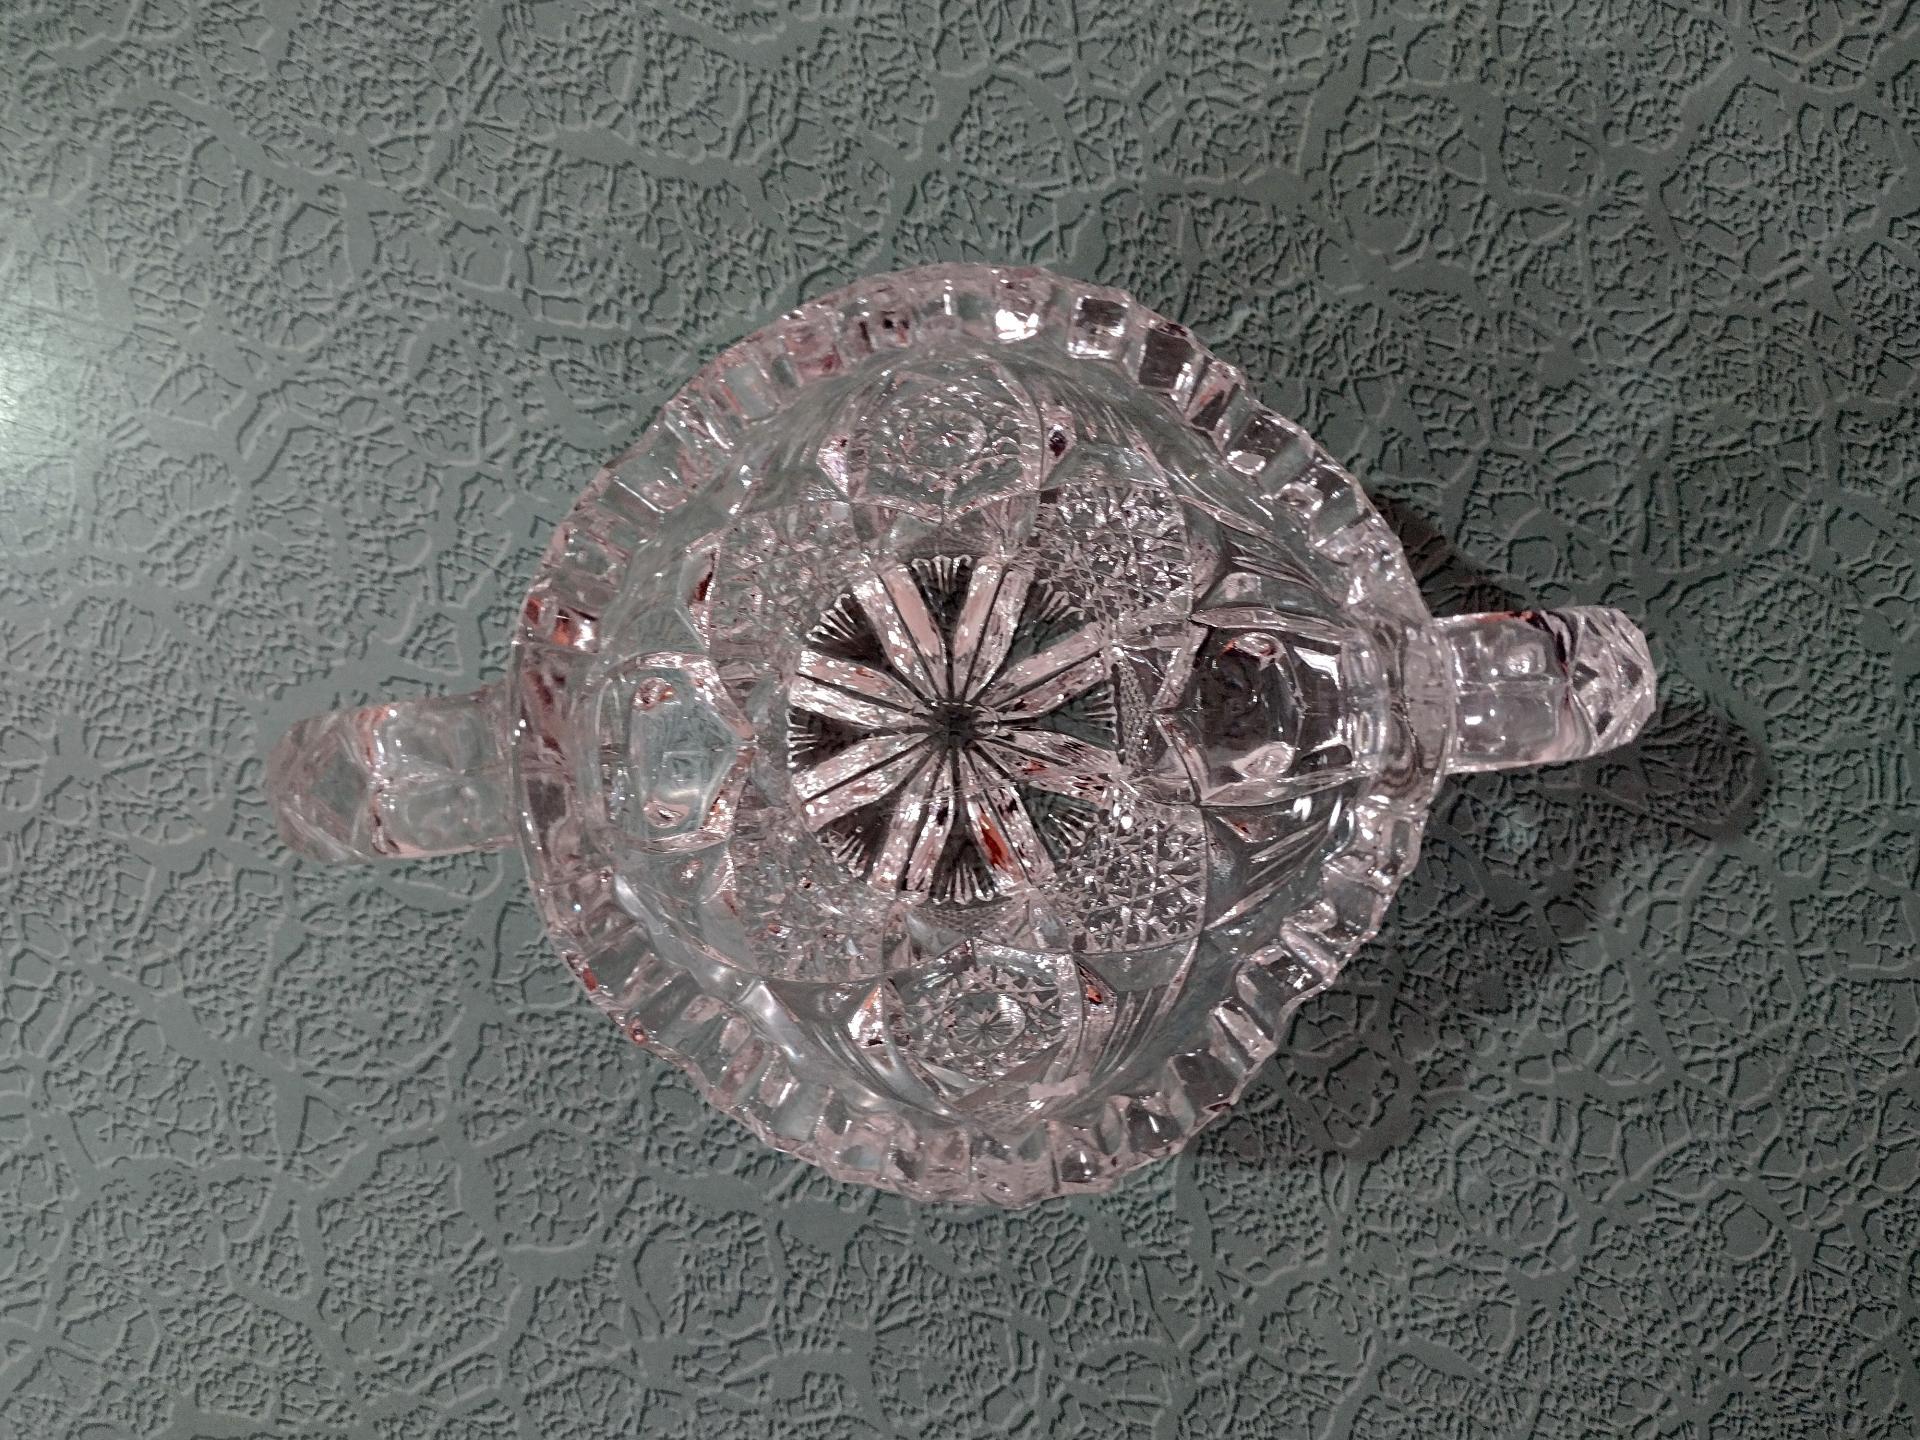 Vintage Antique Imperial Nucut Glass Sugar Bowl